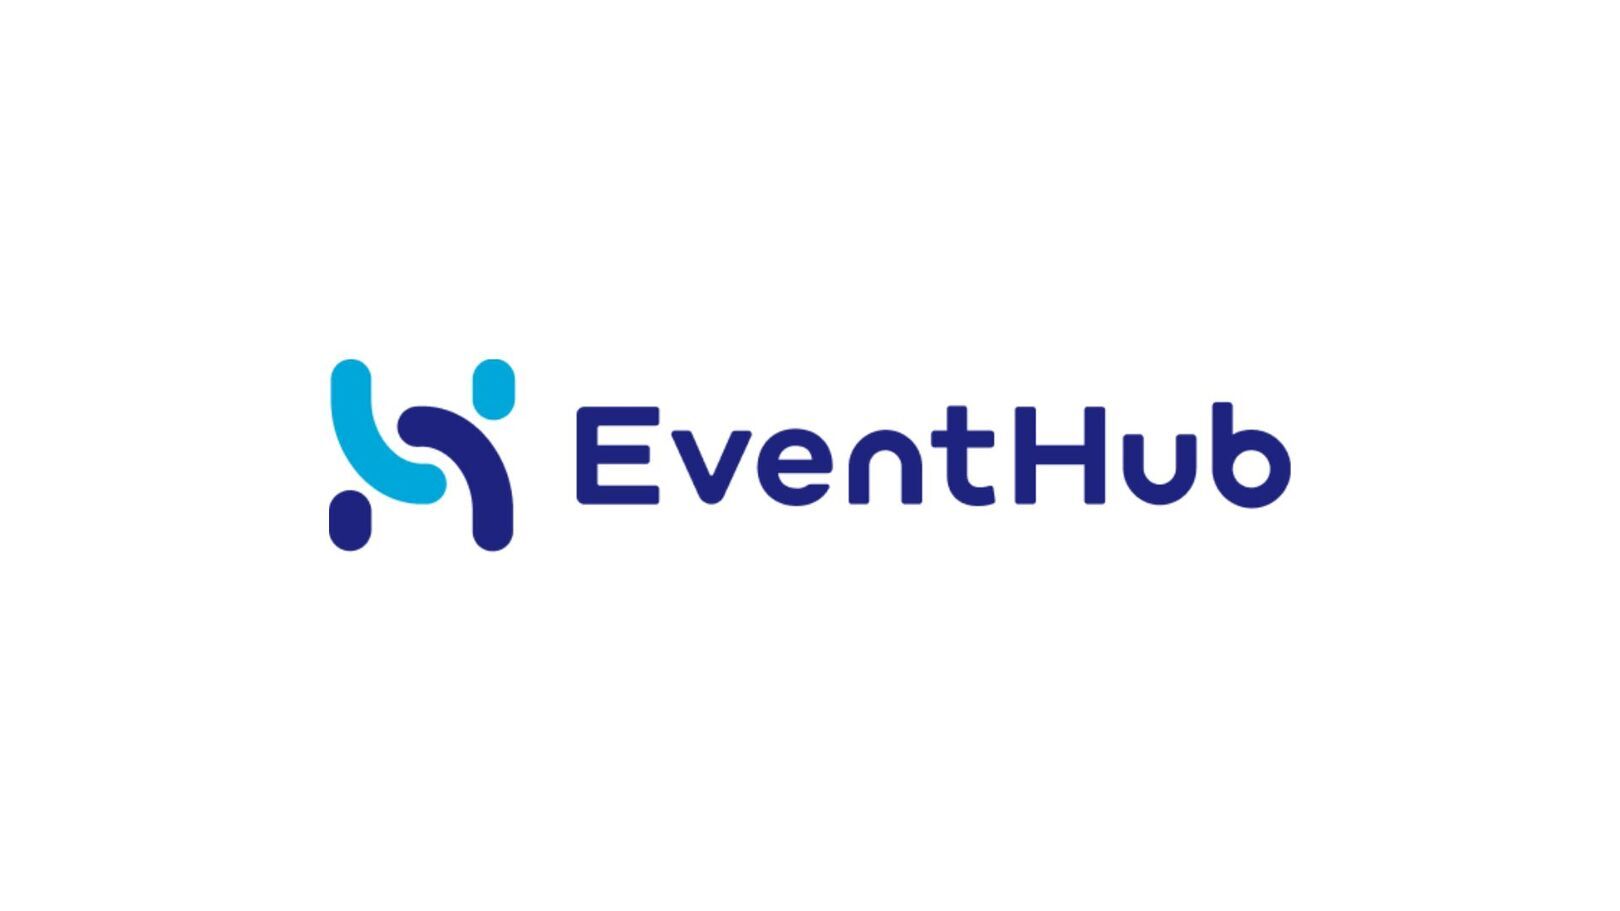 株式会社EventHub（イベントハブ）は、イベントマーケティングシステム「EventHub」の開発・運営をおこなっている会社です。